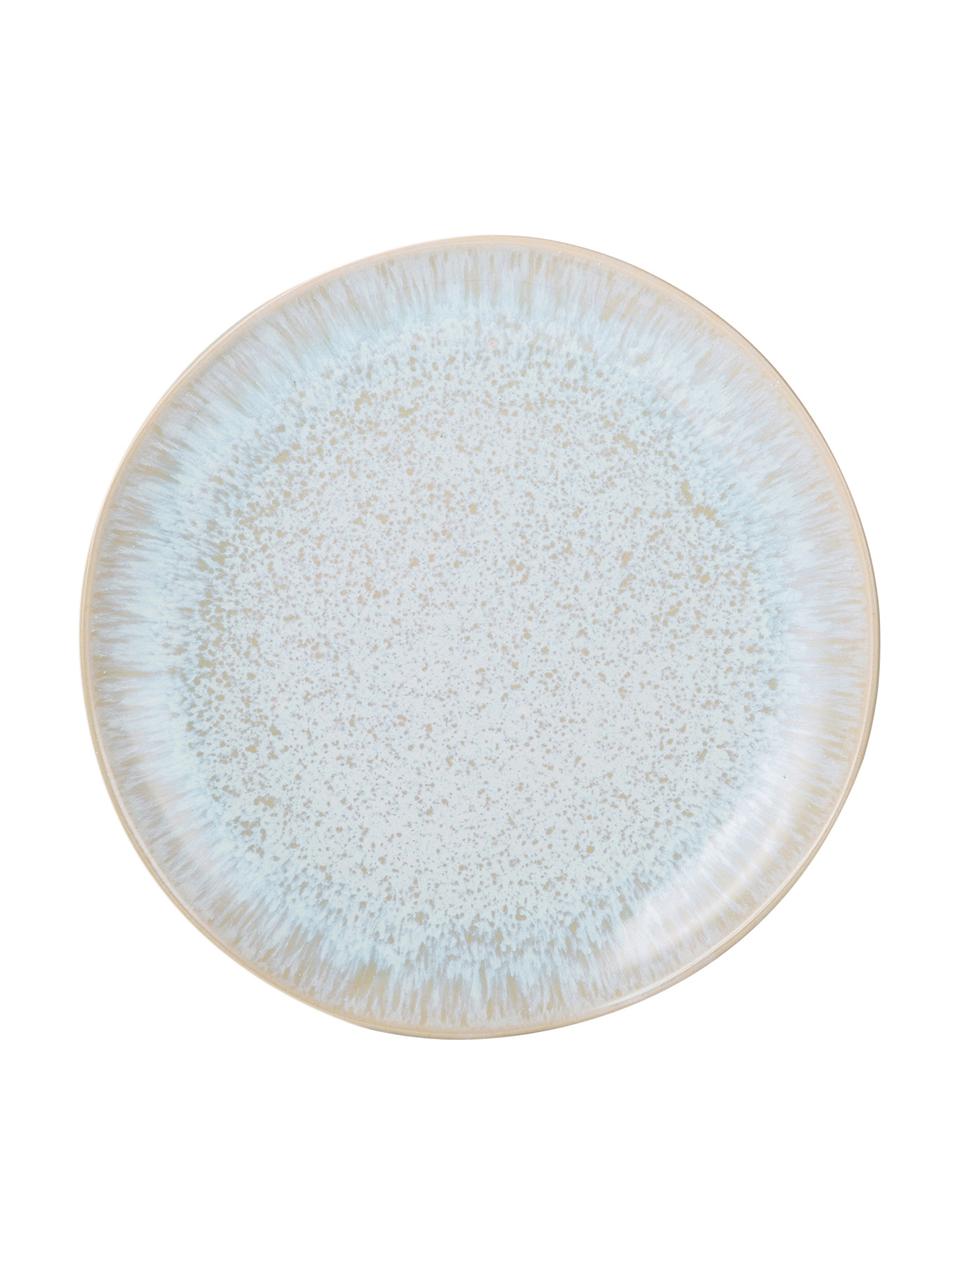 Handbemalte Frühstücksteller Areia mit reaktiver Glasur, 2 Stück, Steingut, Hellblau, Gebrochenes Weiß, Hellbeige, Ø 22 cm